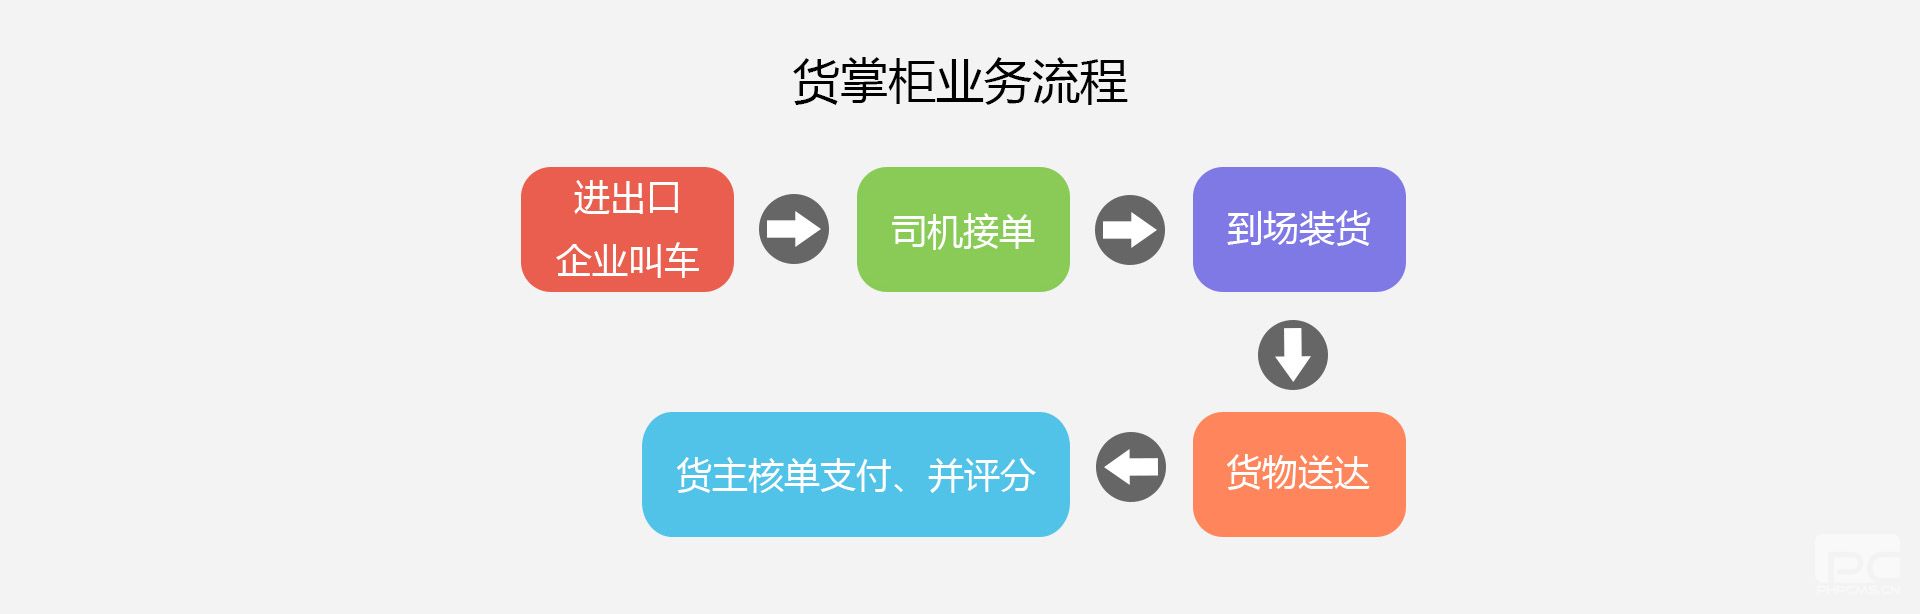 货掌柜运输企业解决方案4(www.huozhanggui.net)